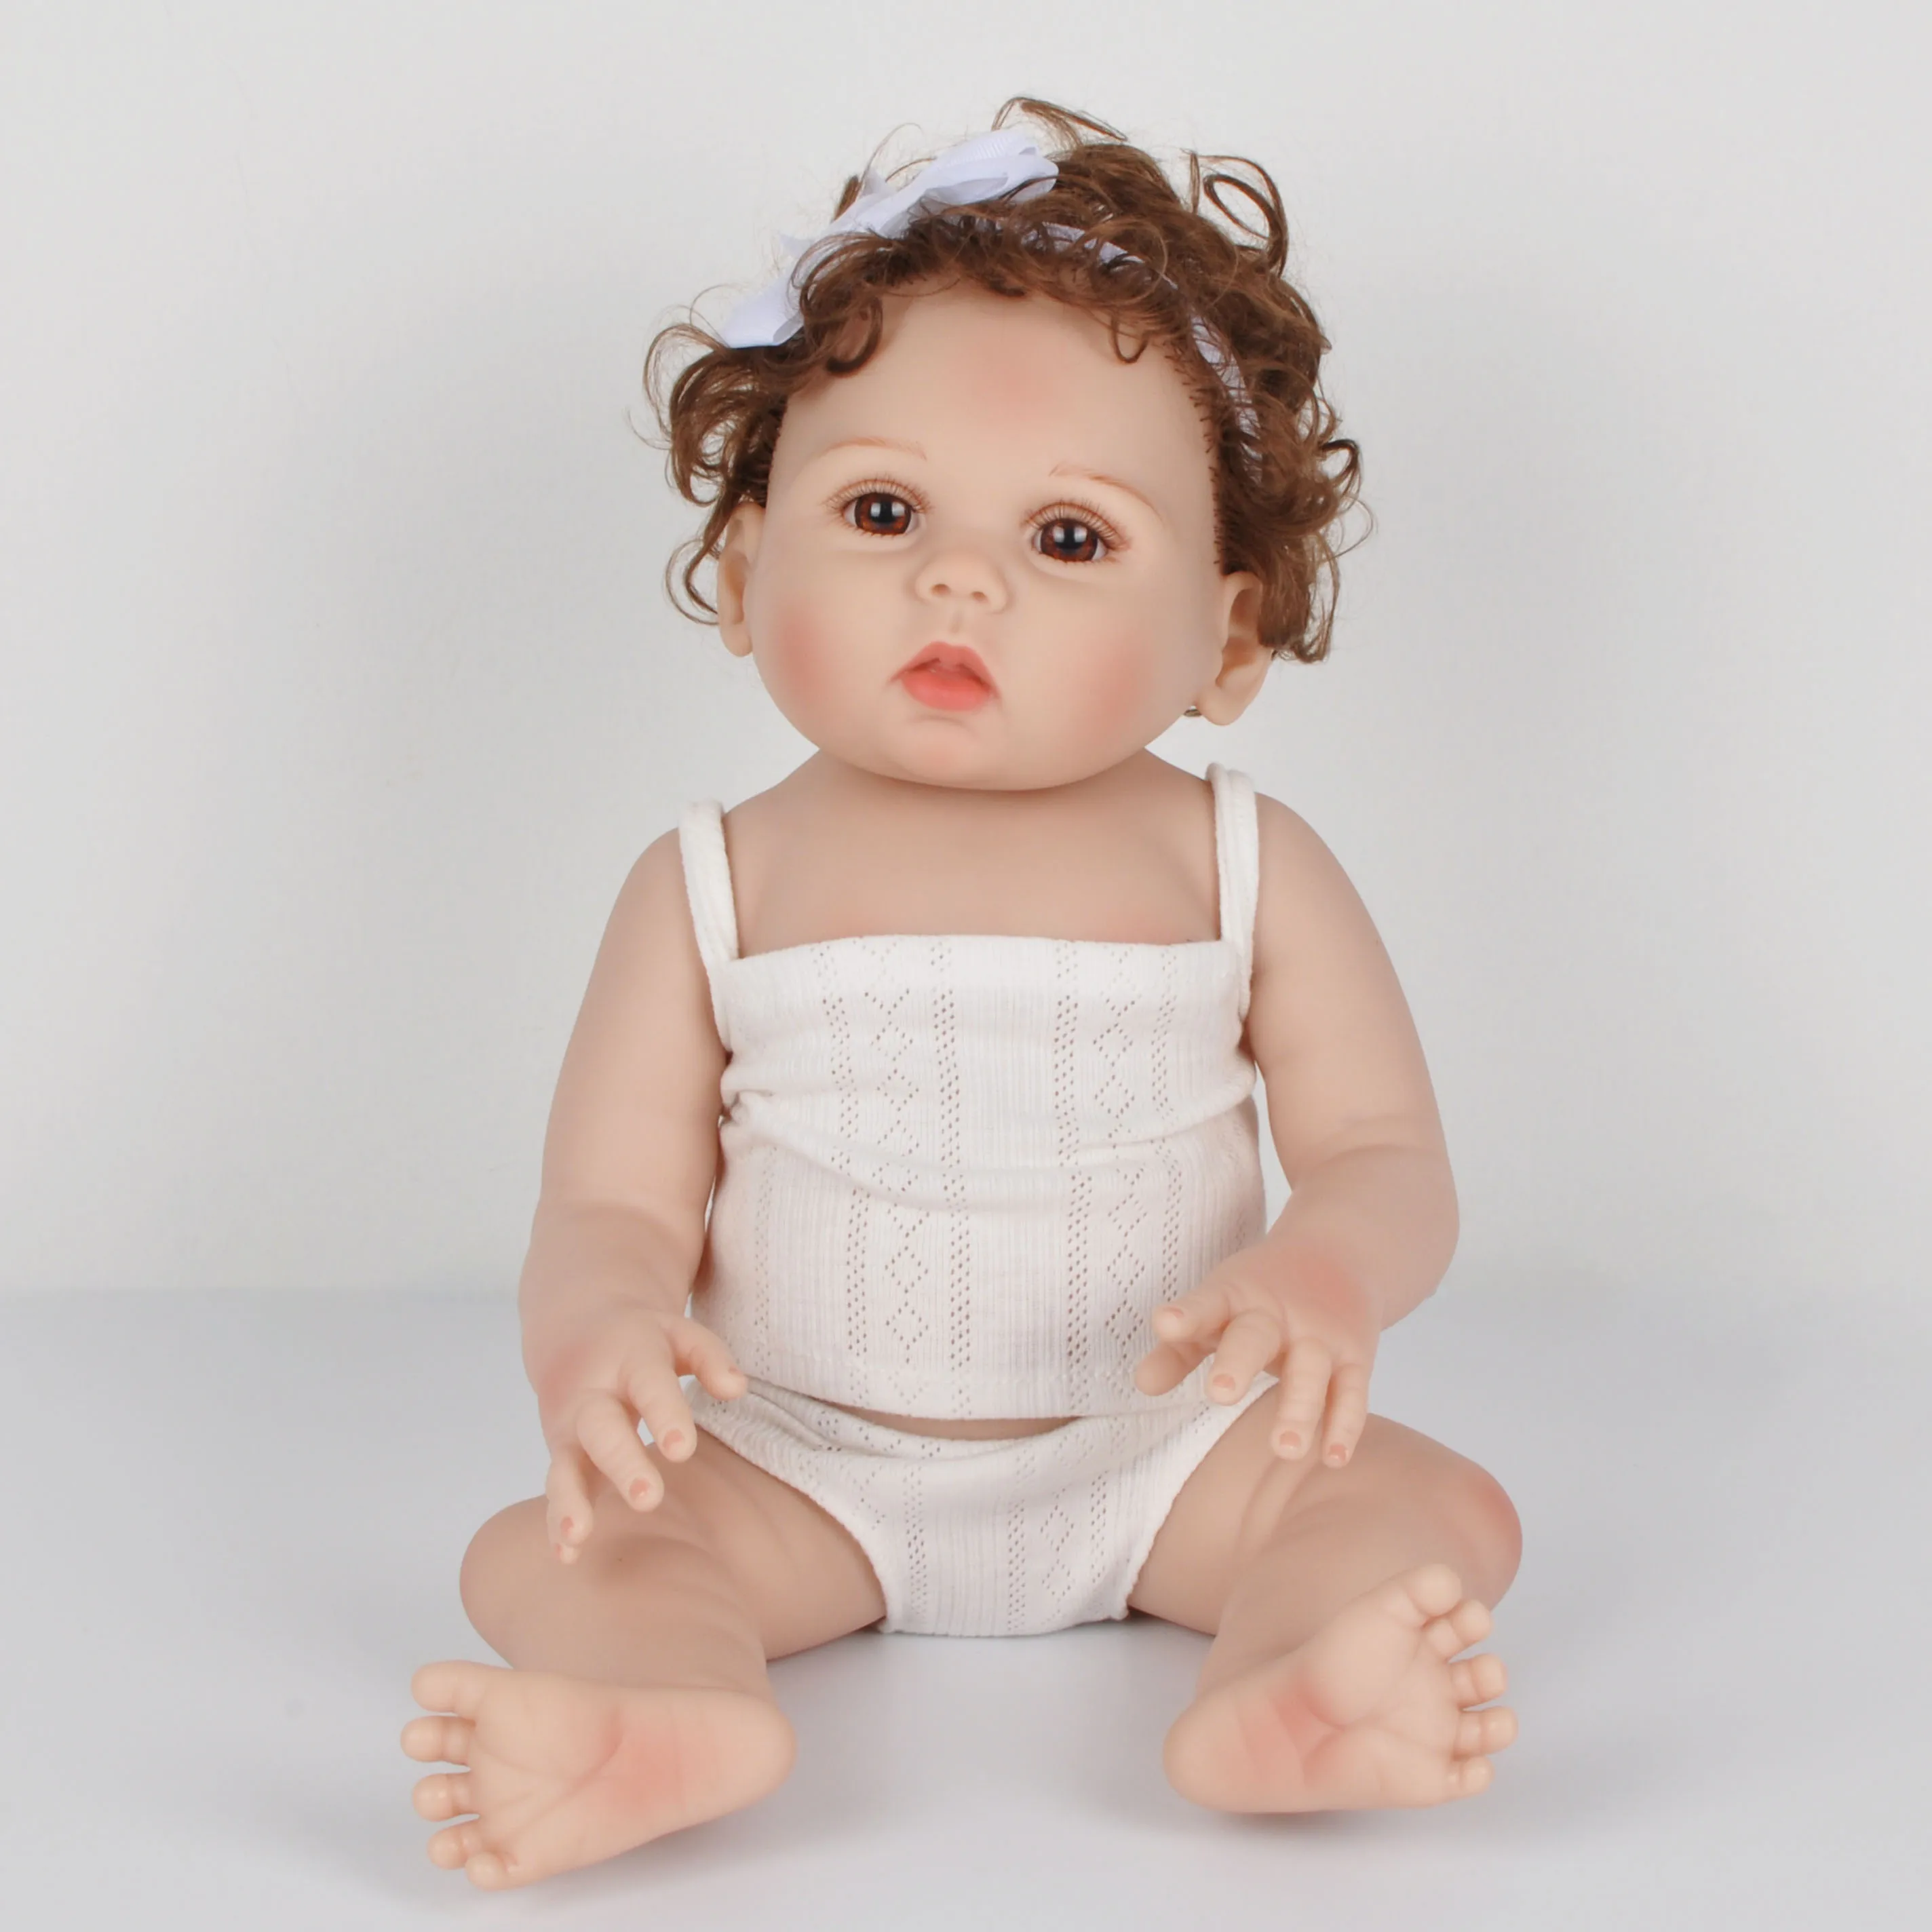 18 дюймов 47 см Reborn Baby Doll полный Силиконовый Bebe Bonecas реалистичный живой ребенок Menino Рождественский подарок игрушки для детей